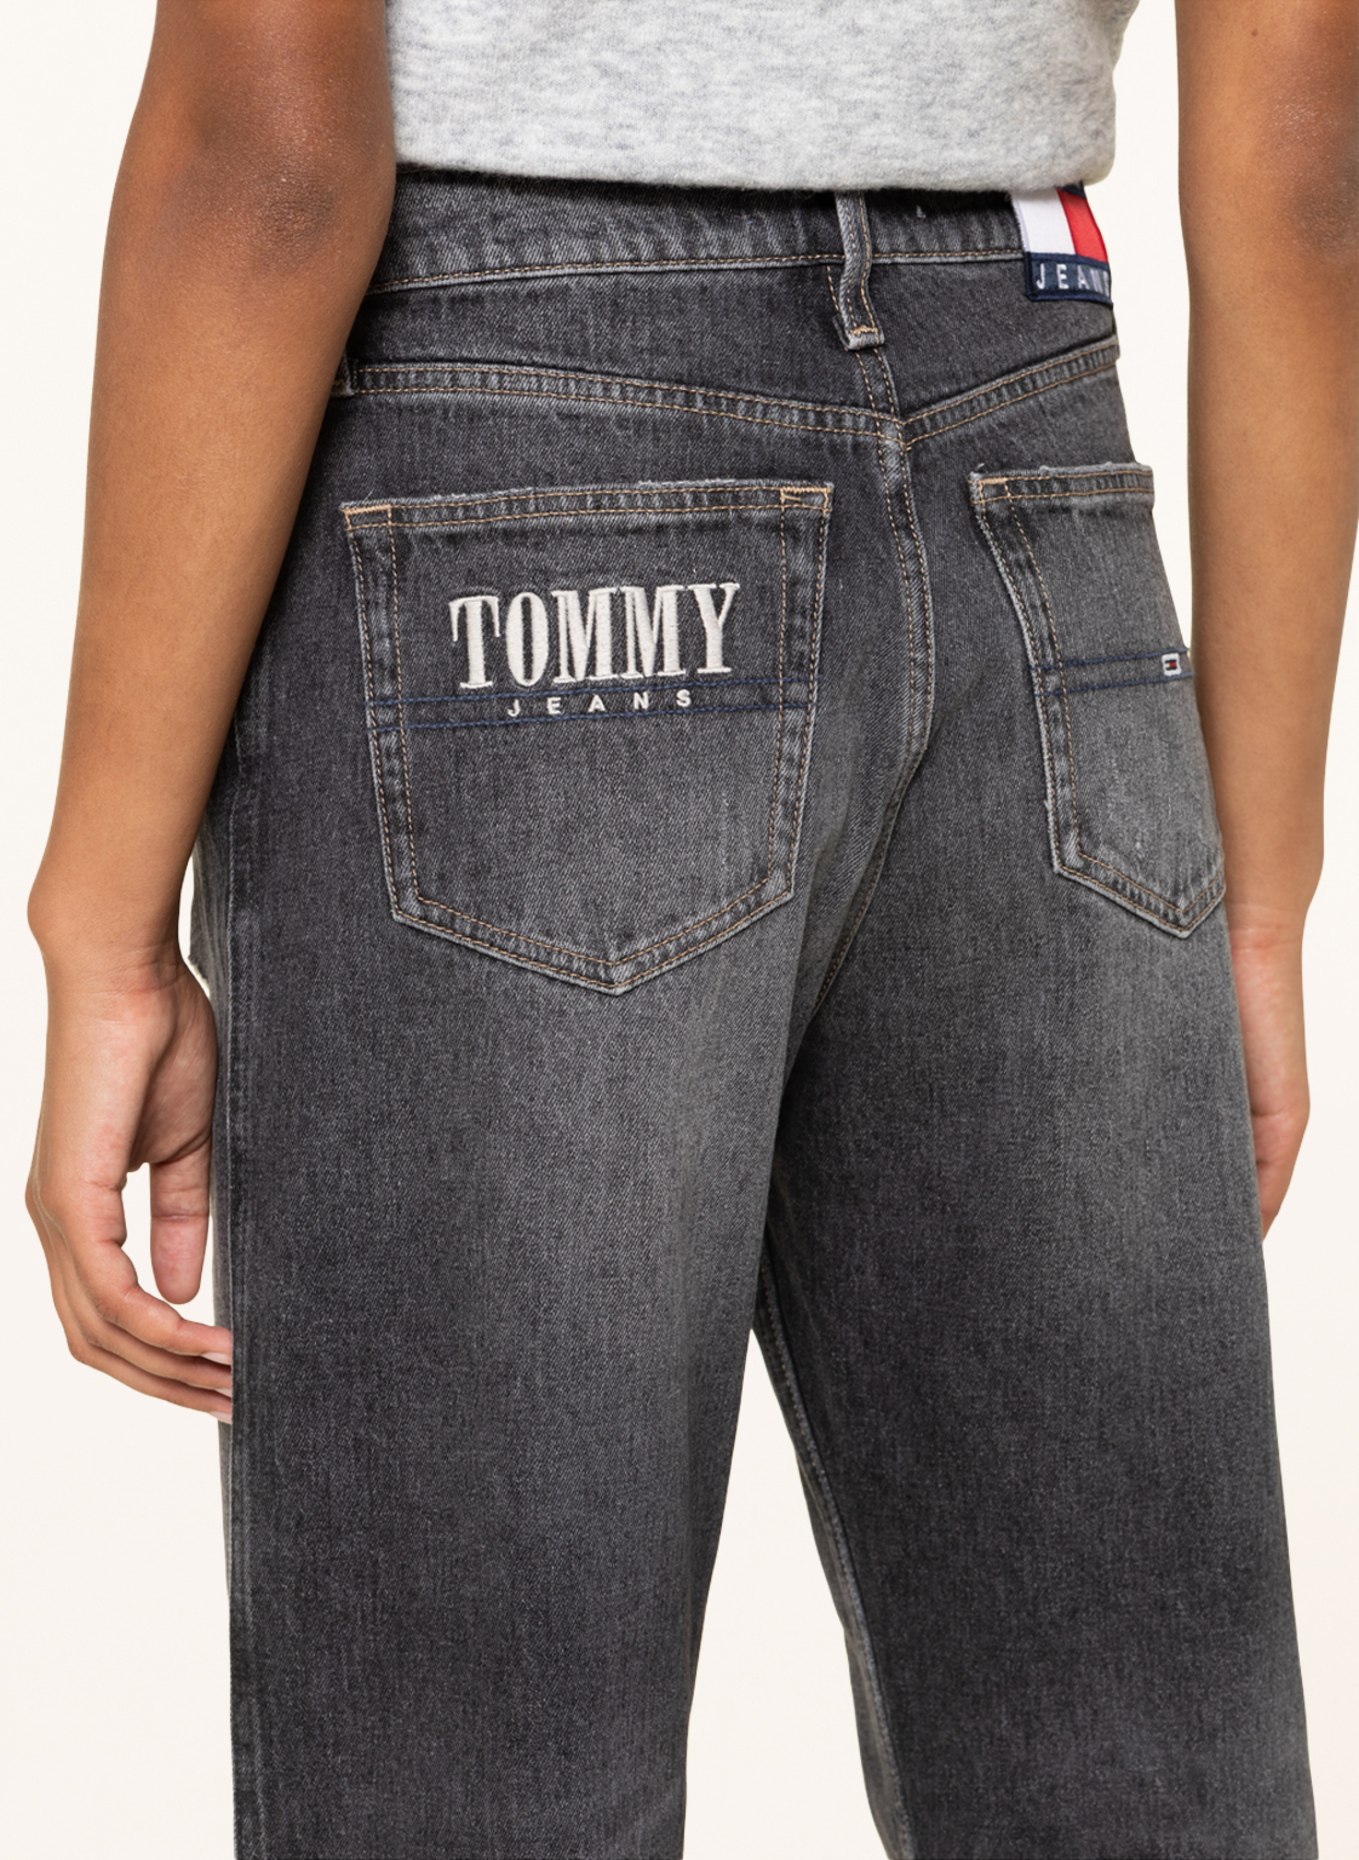 TOMMY JEANS Destroyed jeans BETSY, Color: 1BZ Denim Black (Image 5)